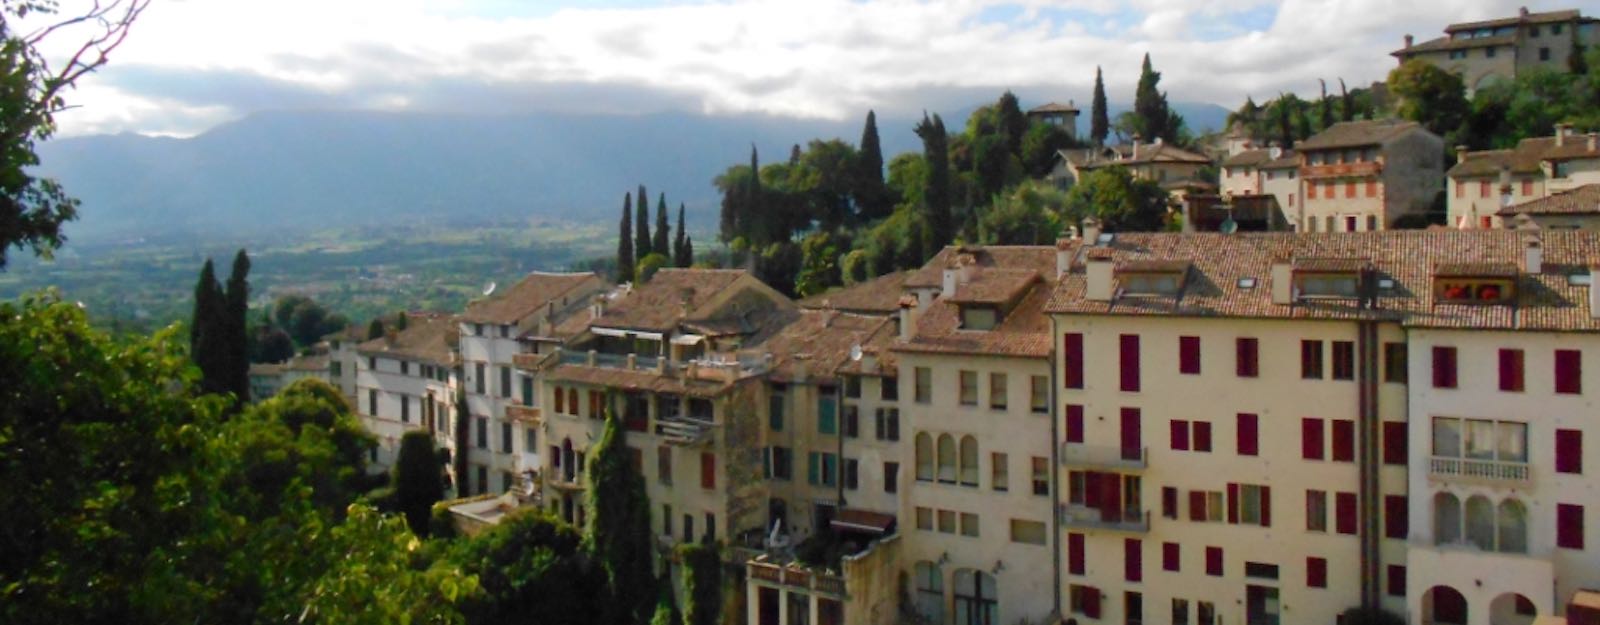 Asolo e Castelfranco - Guida turistica